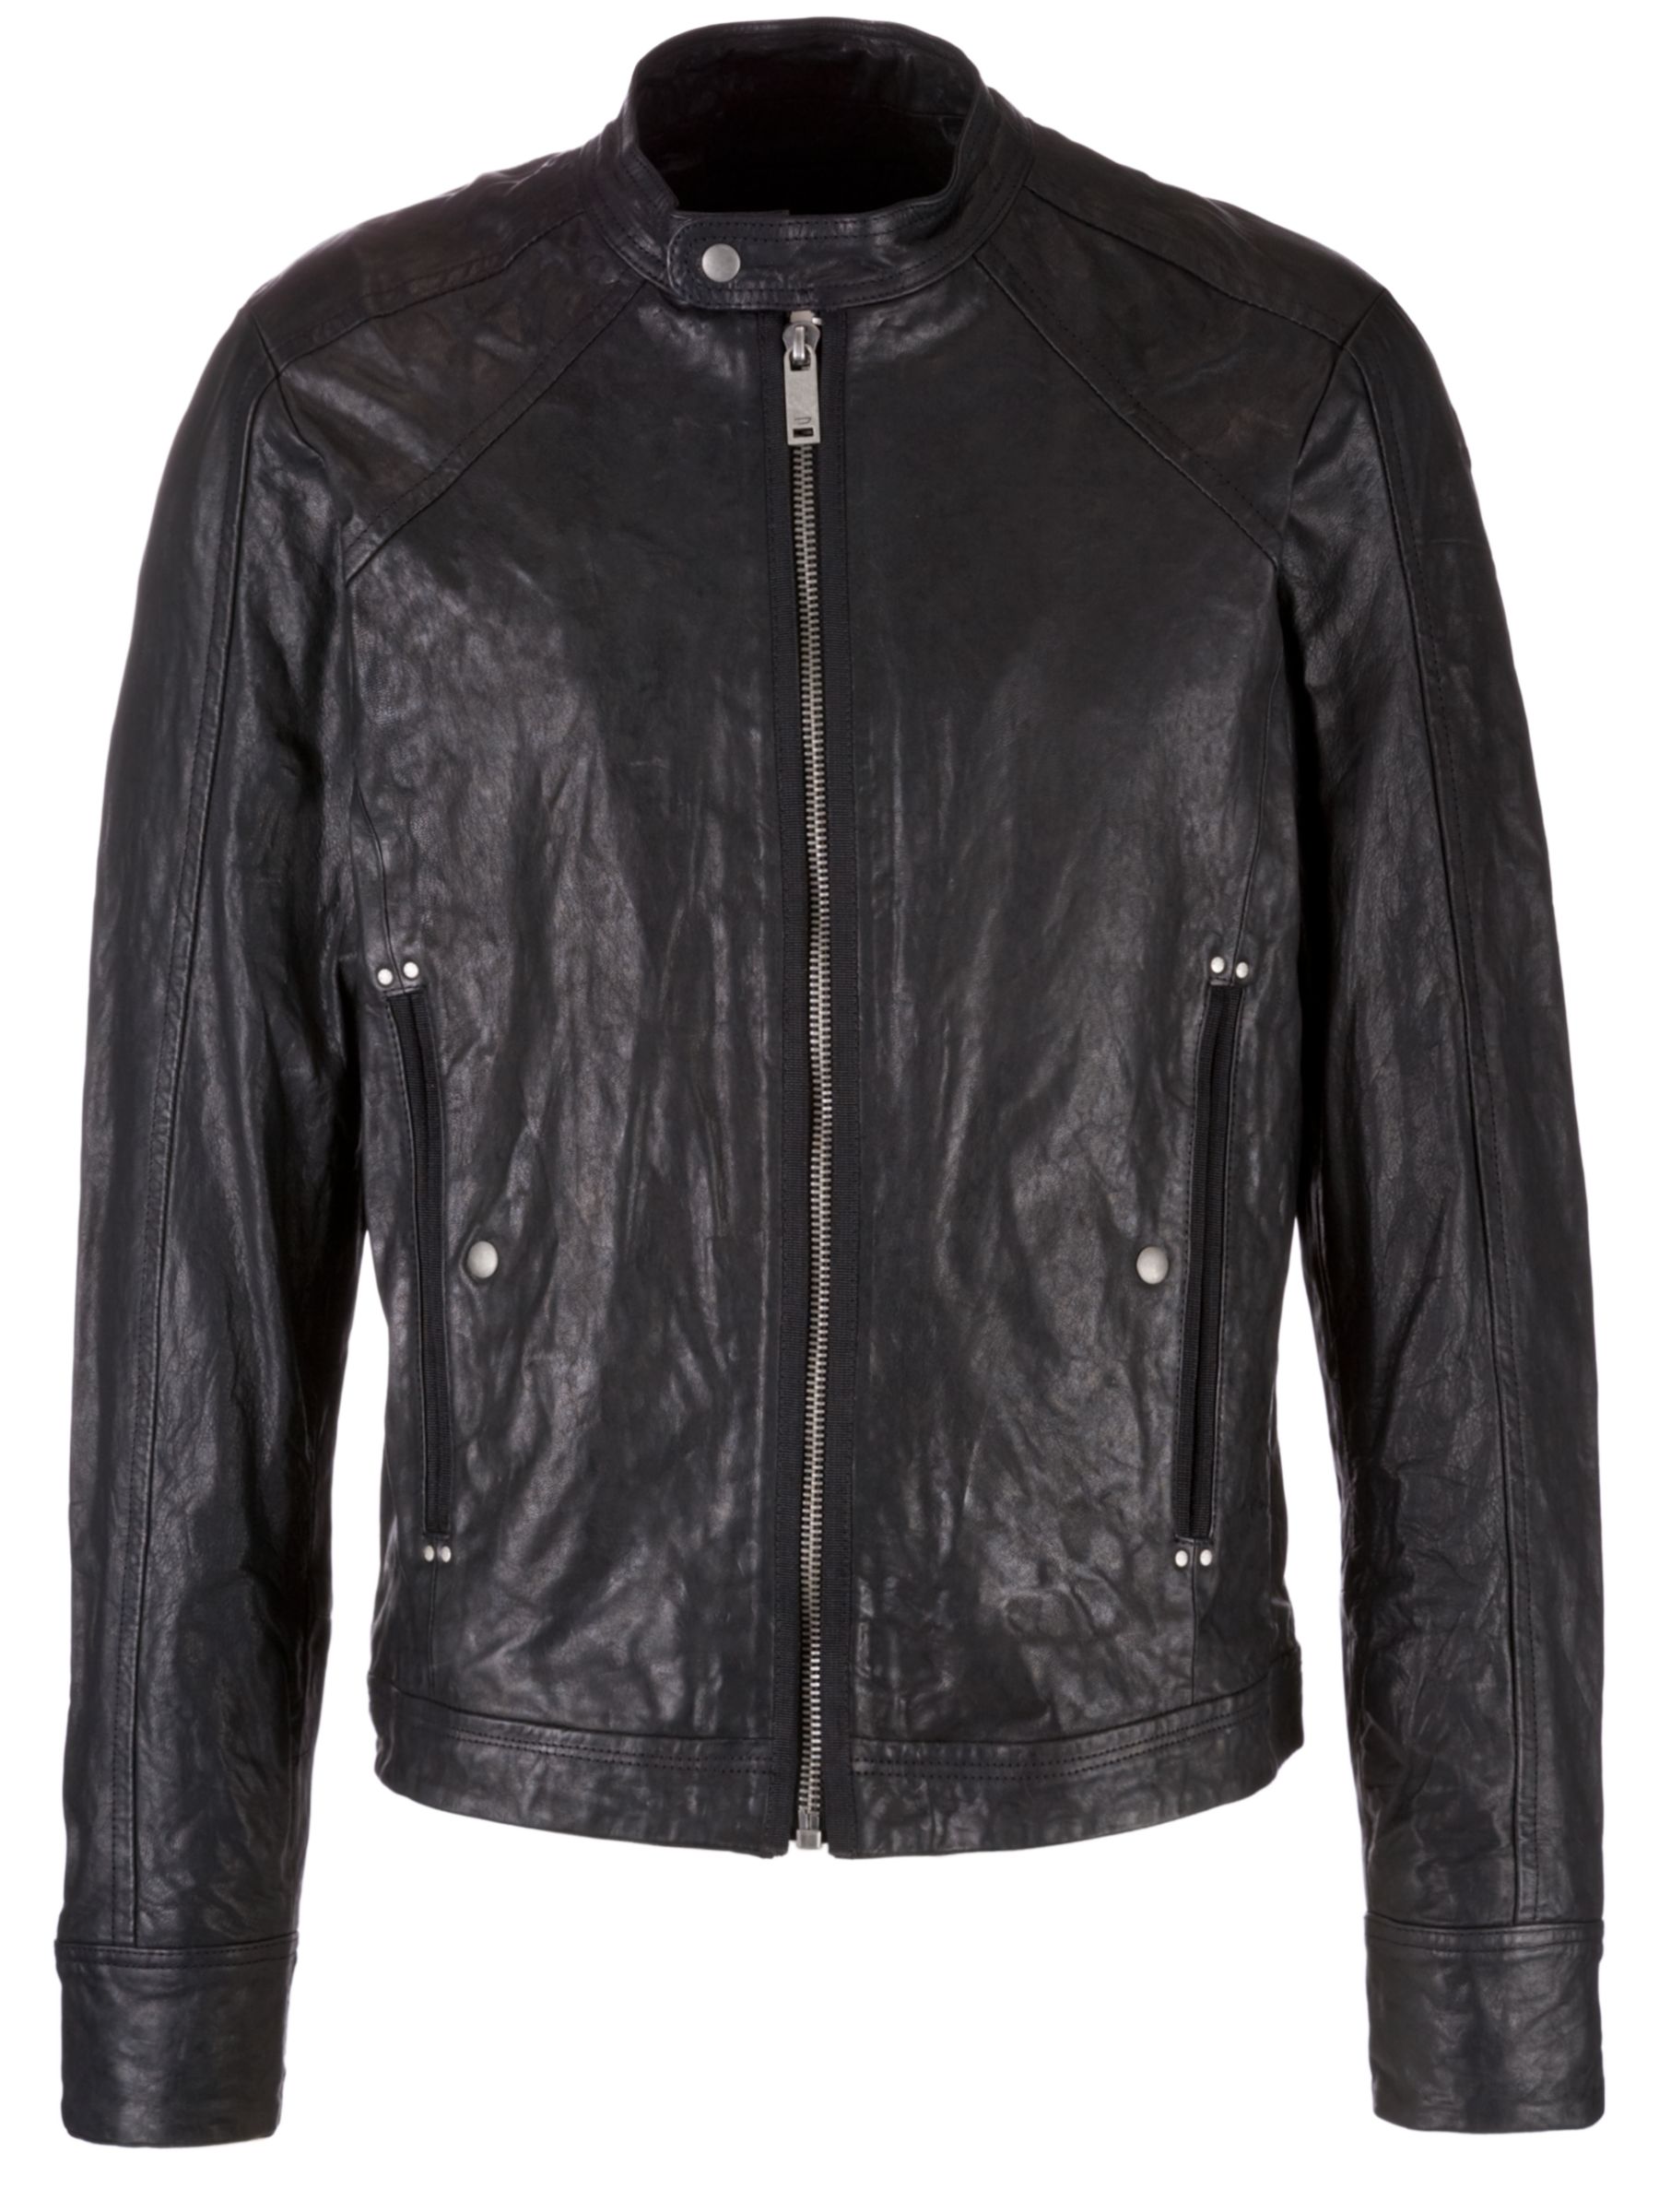 Diesel Leide Biker Leather Jacket, Black at JohnLewis